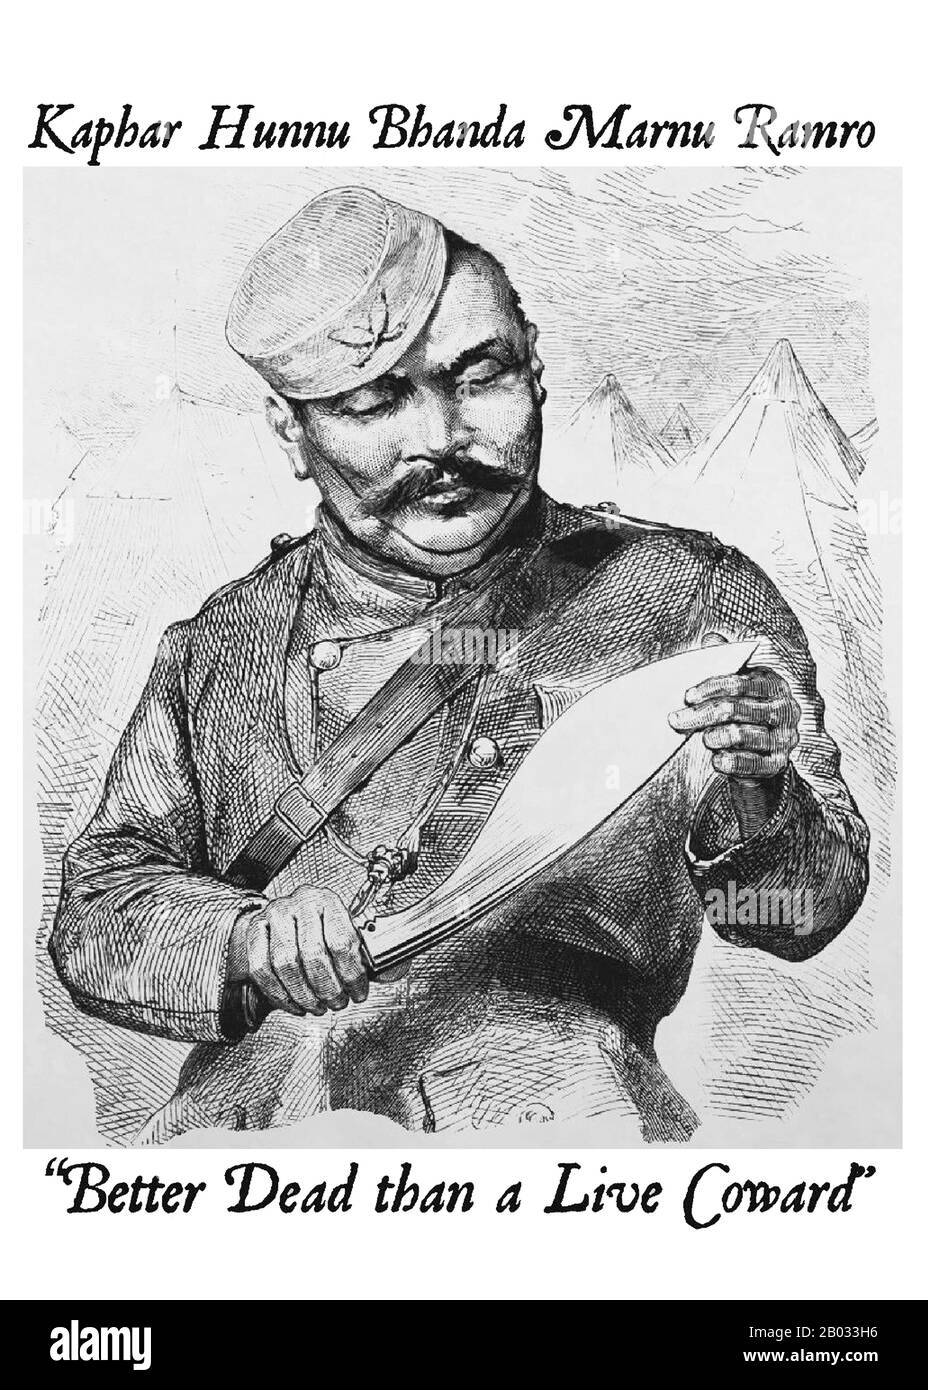 Die Gurkhas sind Soldaten aus Nepal. Der Name geht möglicherweise auf den mittelalterlichen hinduistischen Kriegsheiligen Guru Gorakhnath zurück, der einen historischen Schrein in Gorkha, Nepal, besitzt. Gurkhas sind eng mit dem khukuri verbunden, einem nach vorne geschwungenen nepalesischen Messer und haben einen bekannten Ruf für ihre furchtlose militärische Wehheit. Der ehemalige Generalstabschef der indischen Armee, Feldmarschall Sam Manekshaw, sagte einmal: "Wenn ein Mann sagt, dass er keine Angst davor hat zu sterben, lügt er entweder oder ist ein Gurkha". Stockfoto